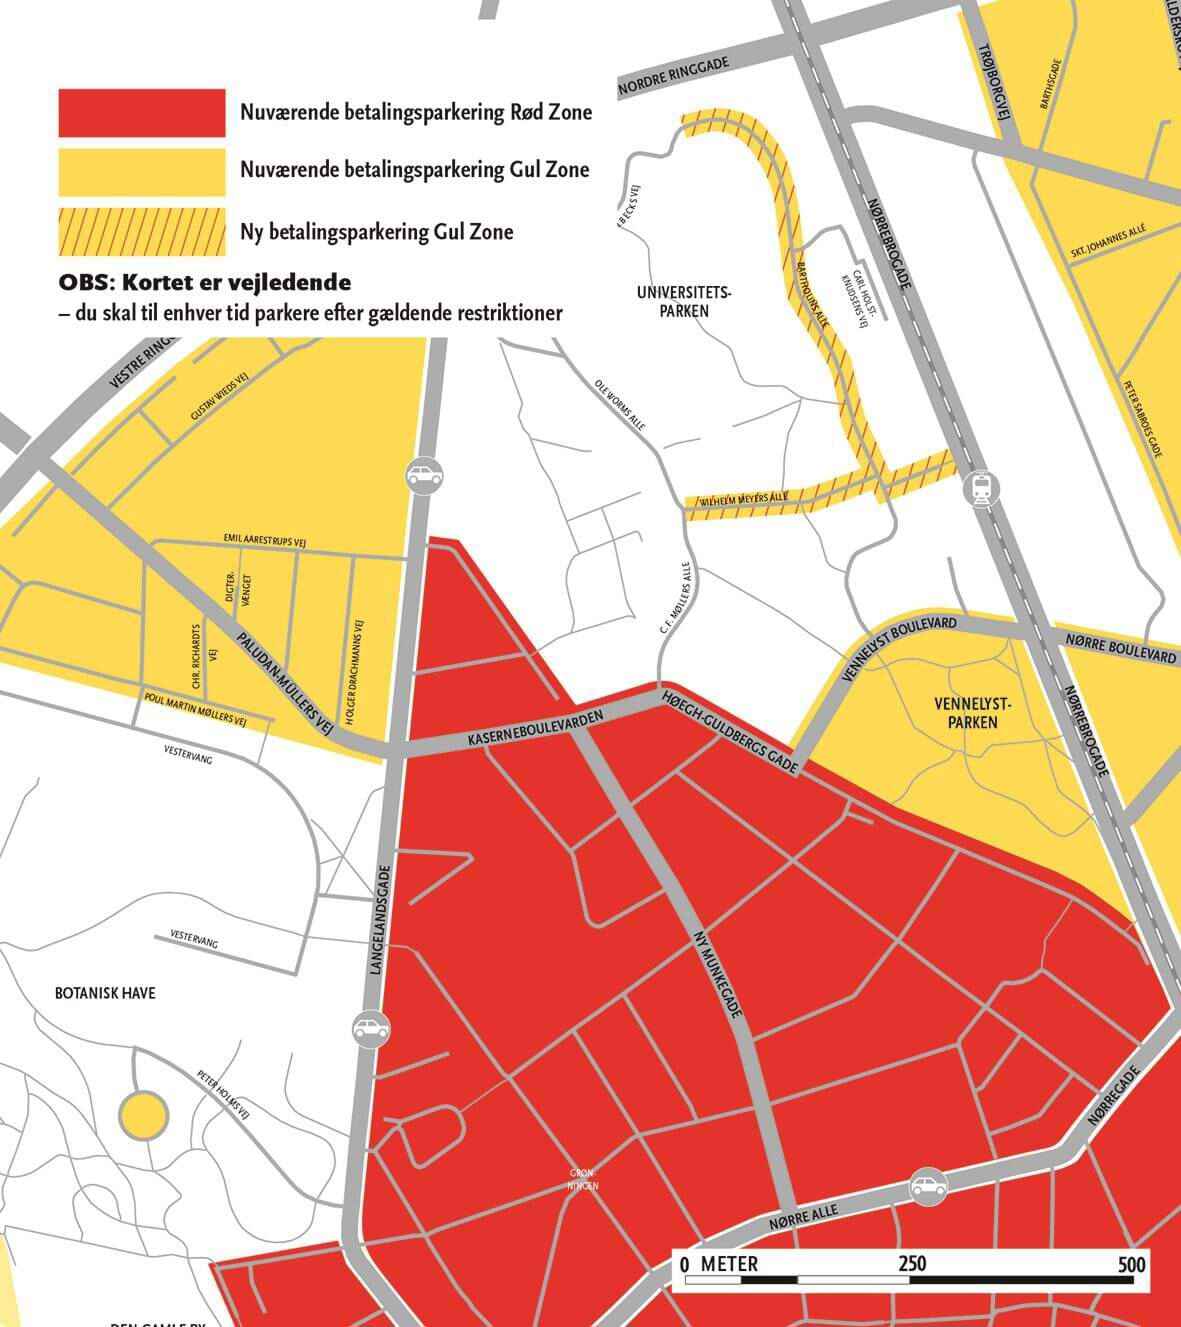  Gul zone udvider til Aarhus Universitetsparken